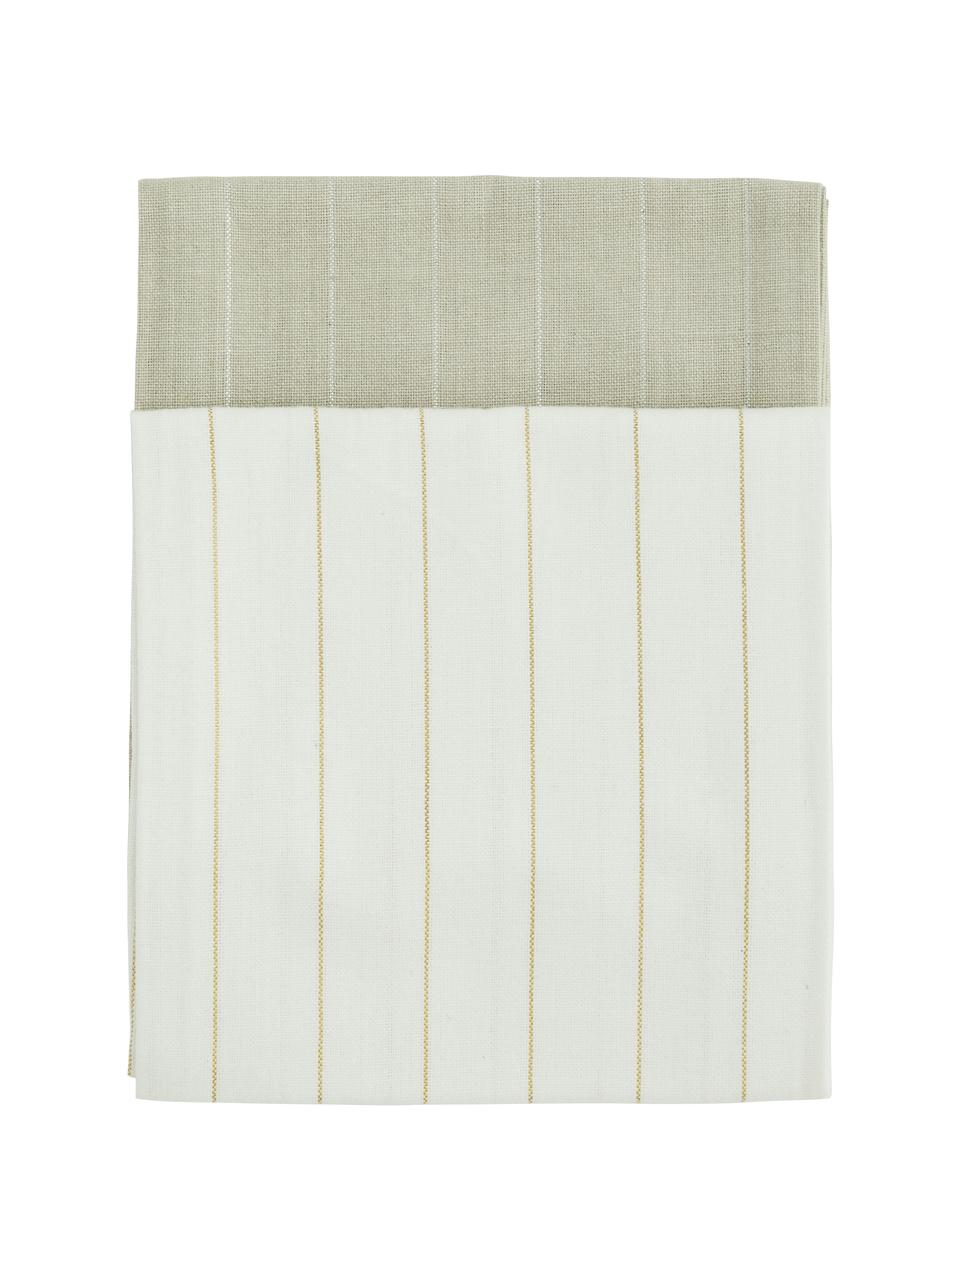 Komplet ręczników kuchennych z bawełny Lines, 4 elem., 100% bawełna, nić lureksowa, Beżowy, kremowy, S 50 x D 70 cm